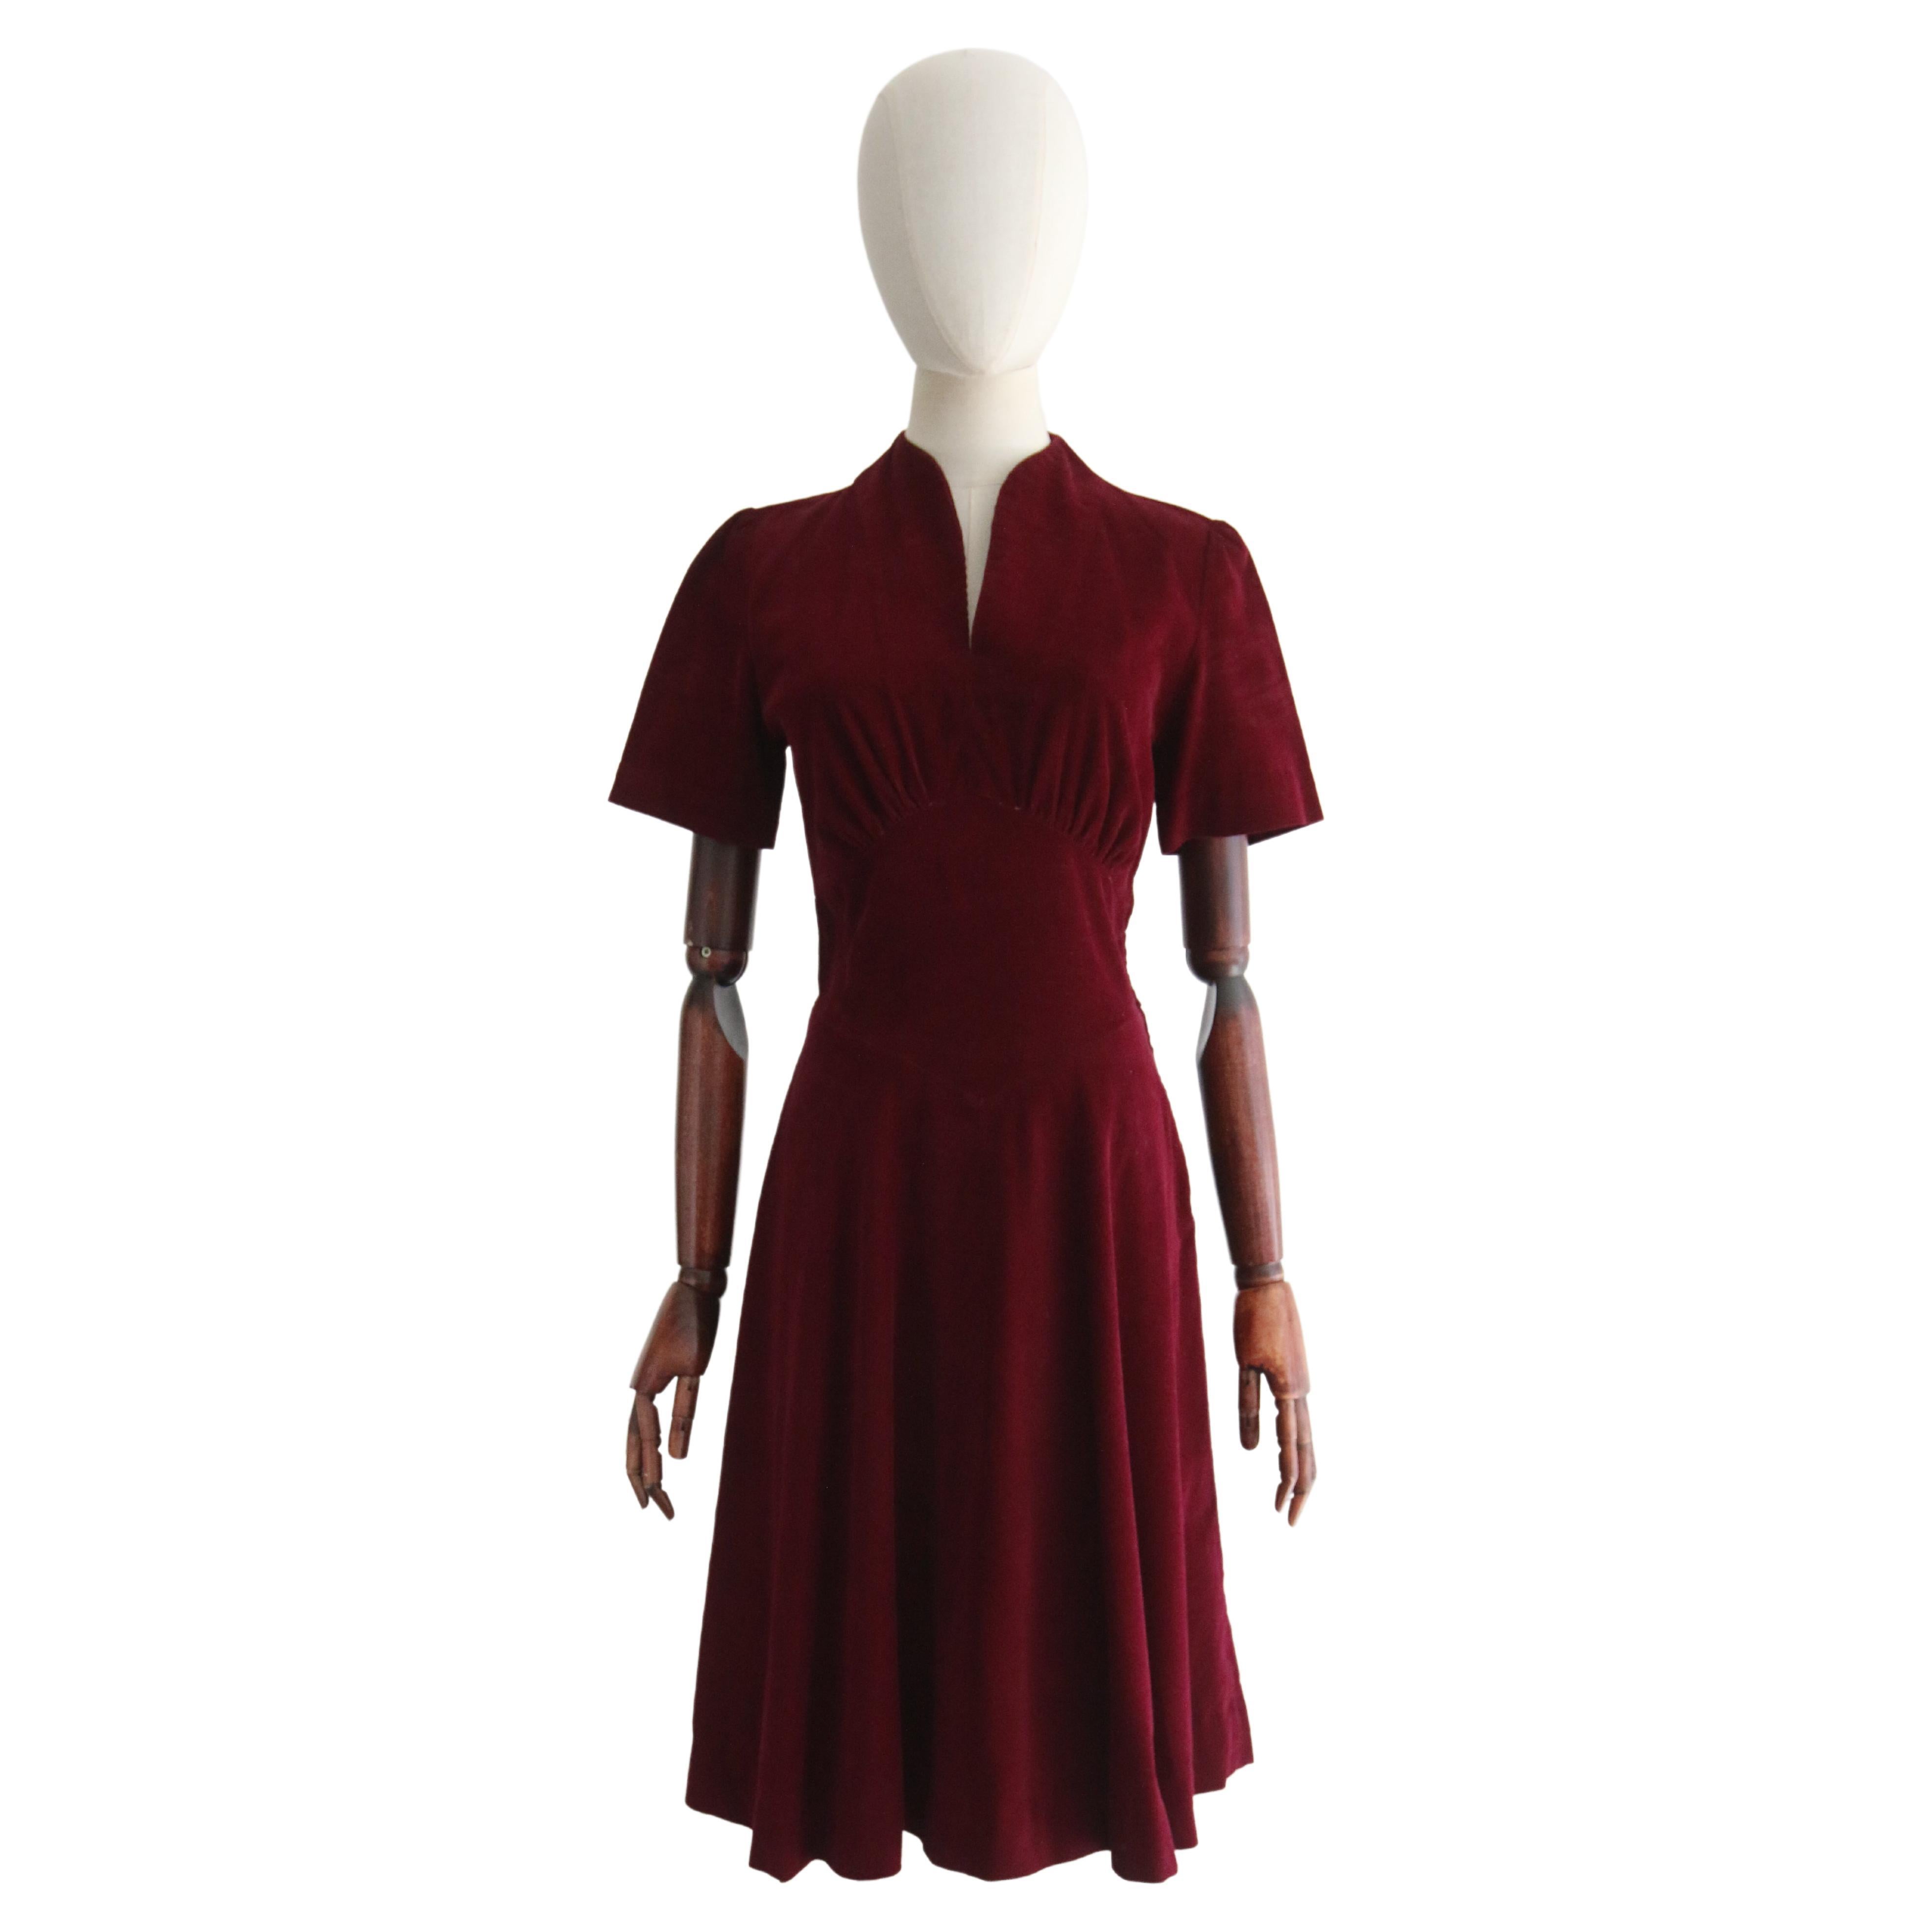 Vintage 1940's Burgundy Corduroy Dress UK 8 US 4 For Sale